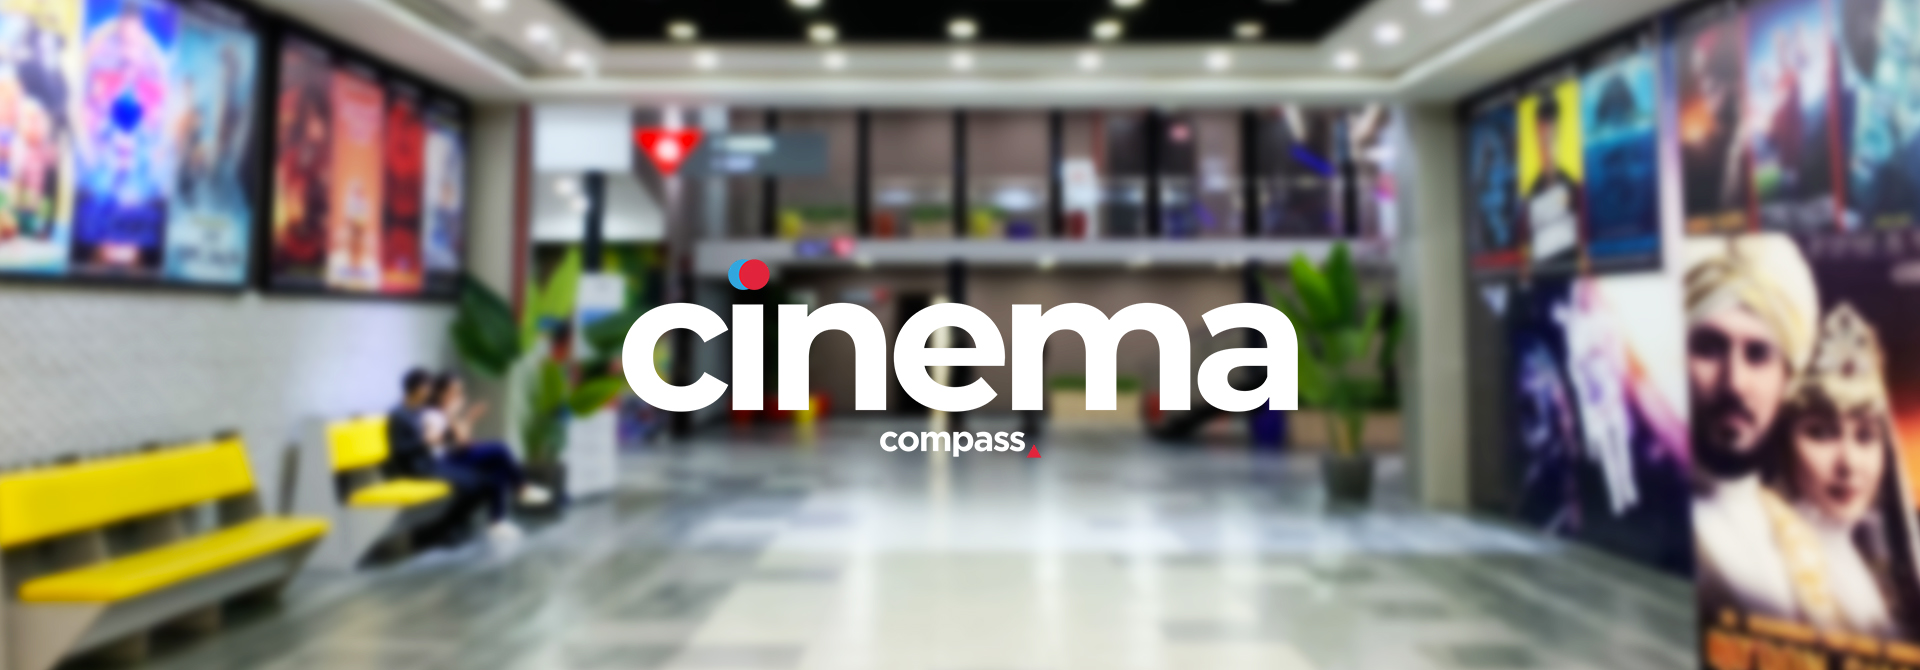 Кинотеатр «Compass Cinema- Малый зал 5» в Ташкенте - расписание фильмов, афиша кино, адрес, телефоны и другие контакты